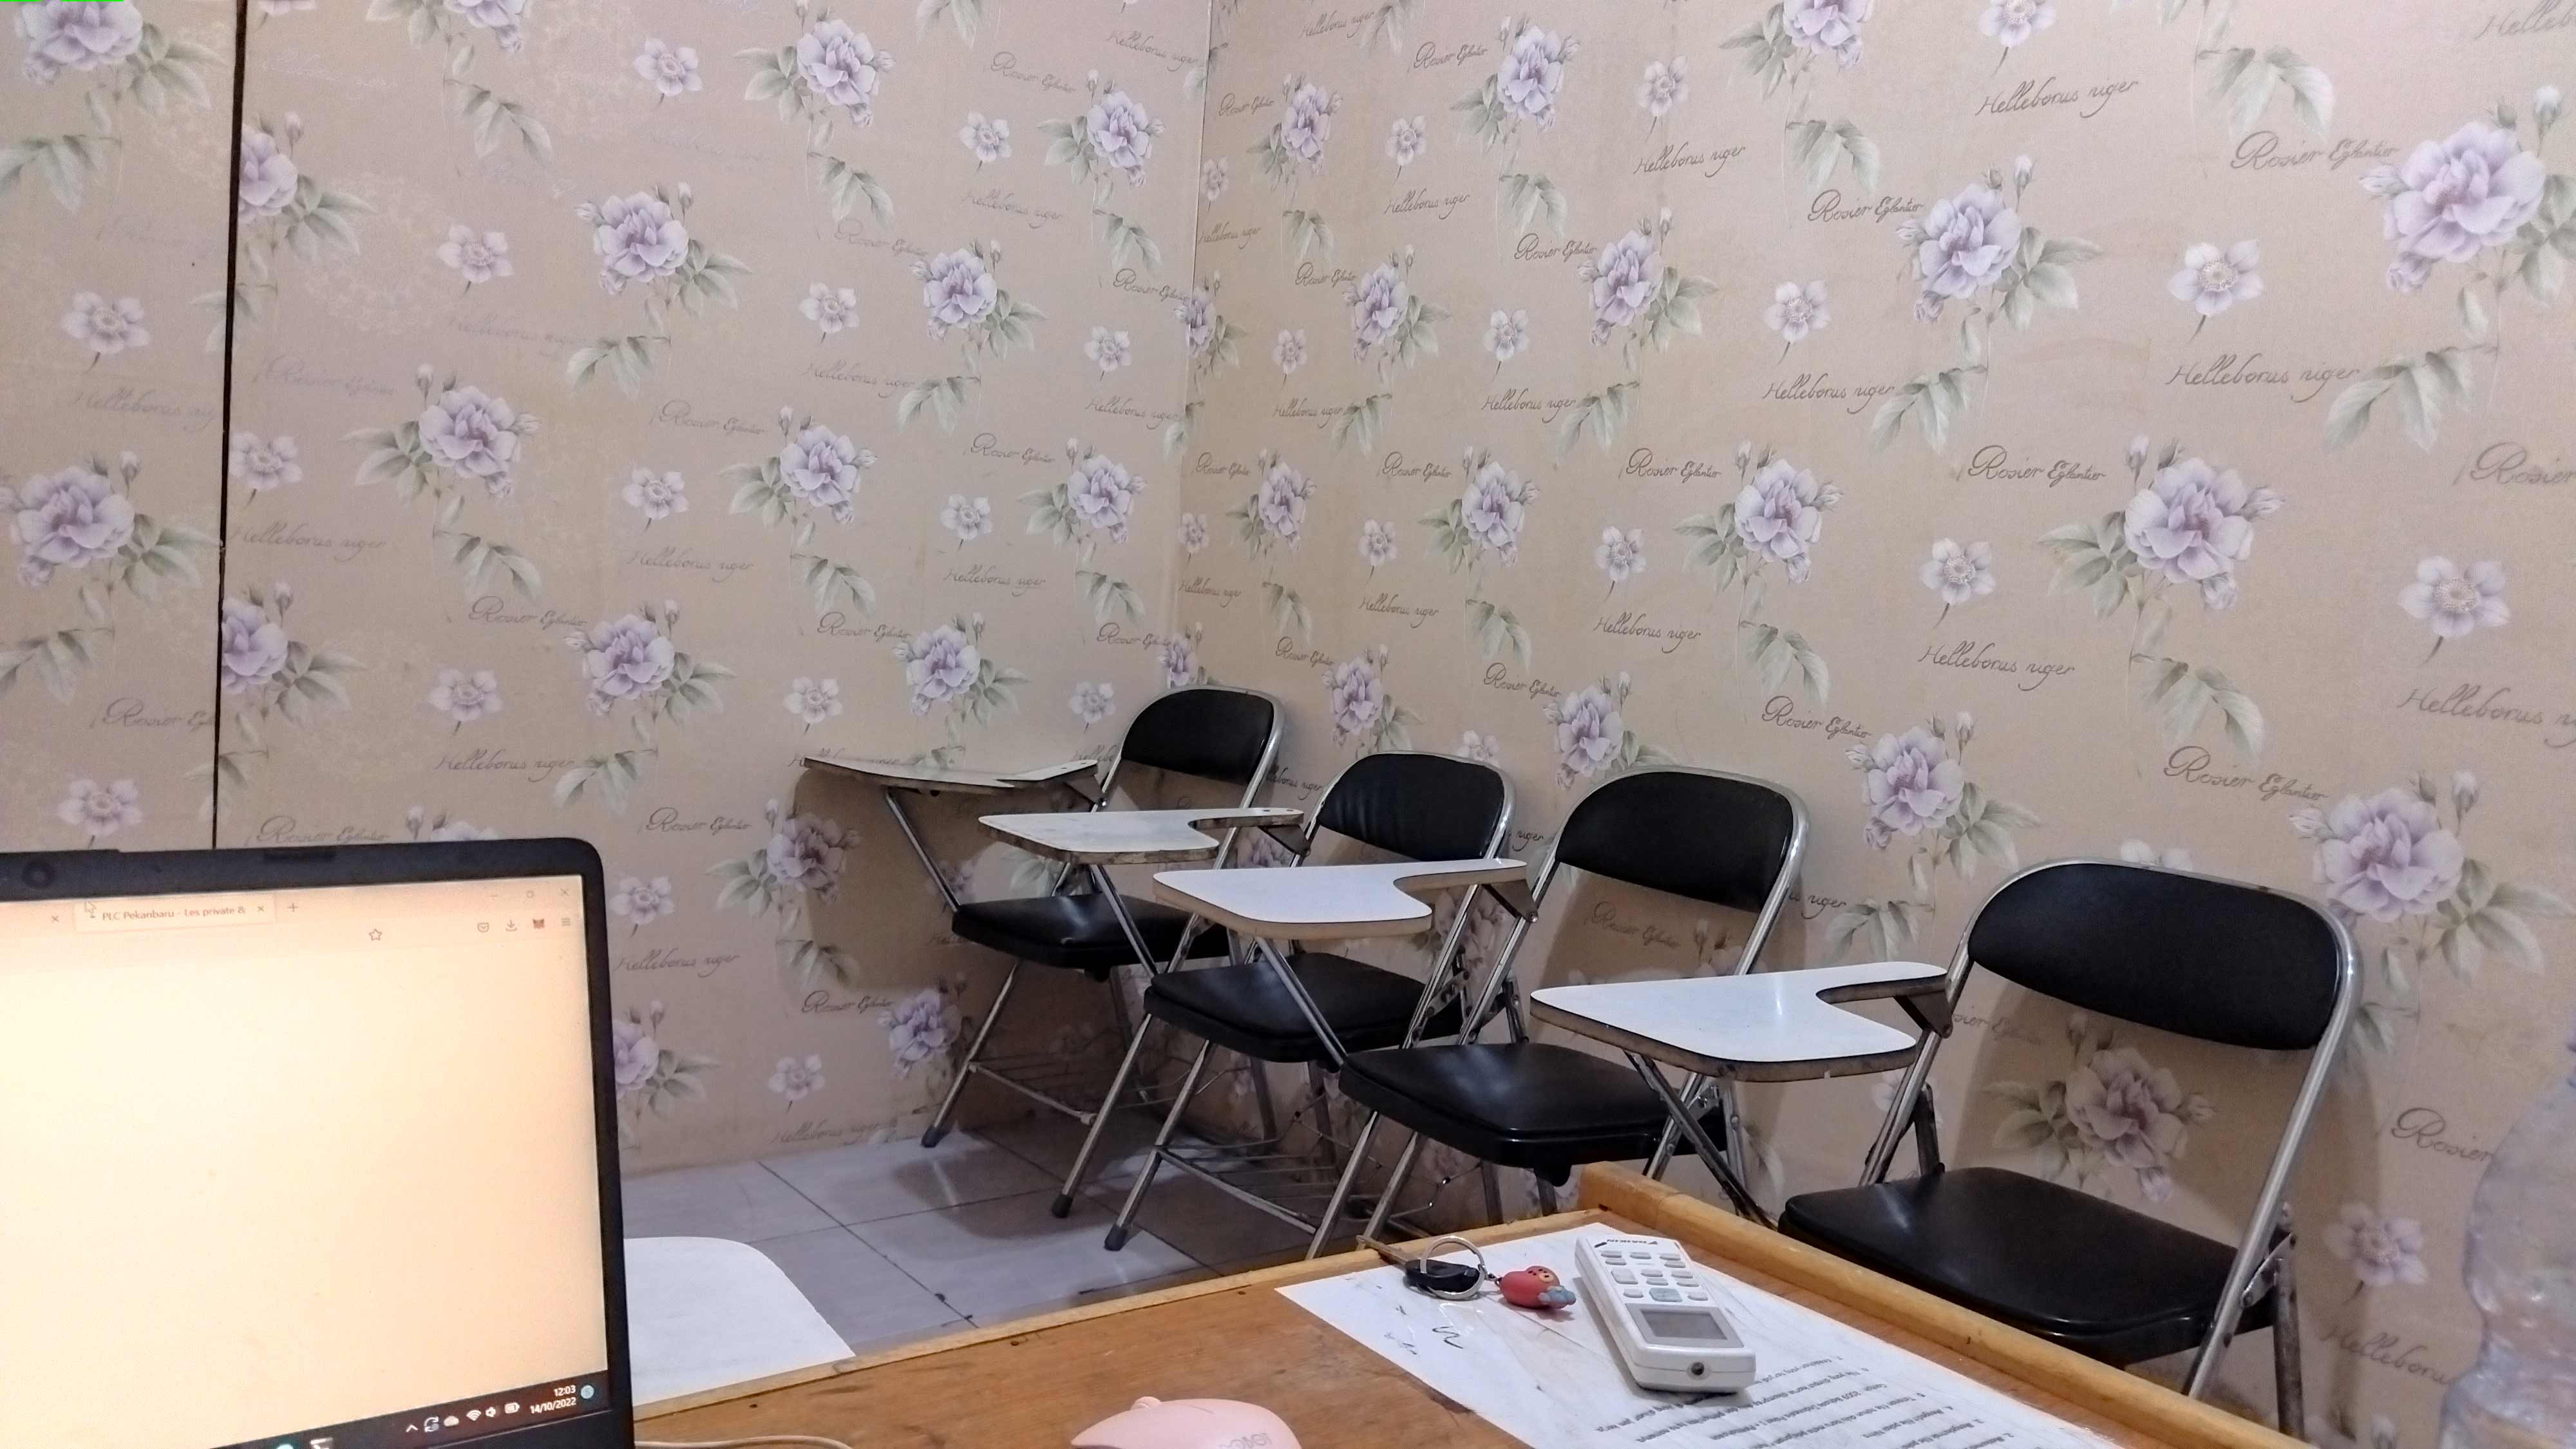 Gambar ruang kelas bimbel plc pekanbaru untuk pendalaman materi les akpol